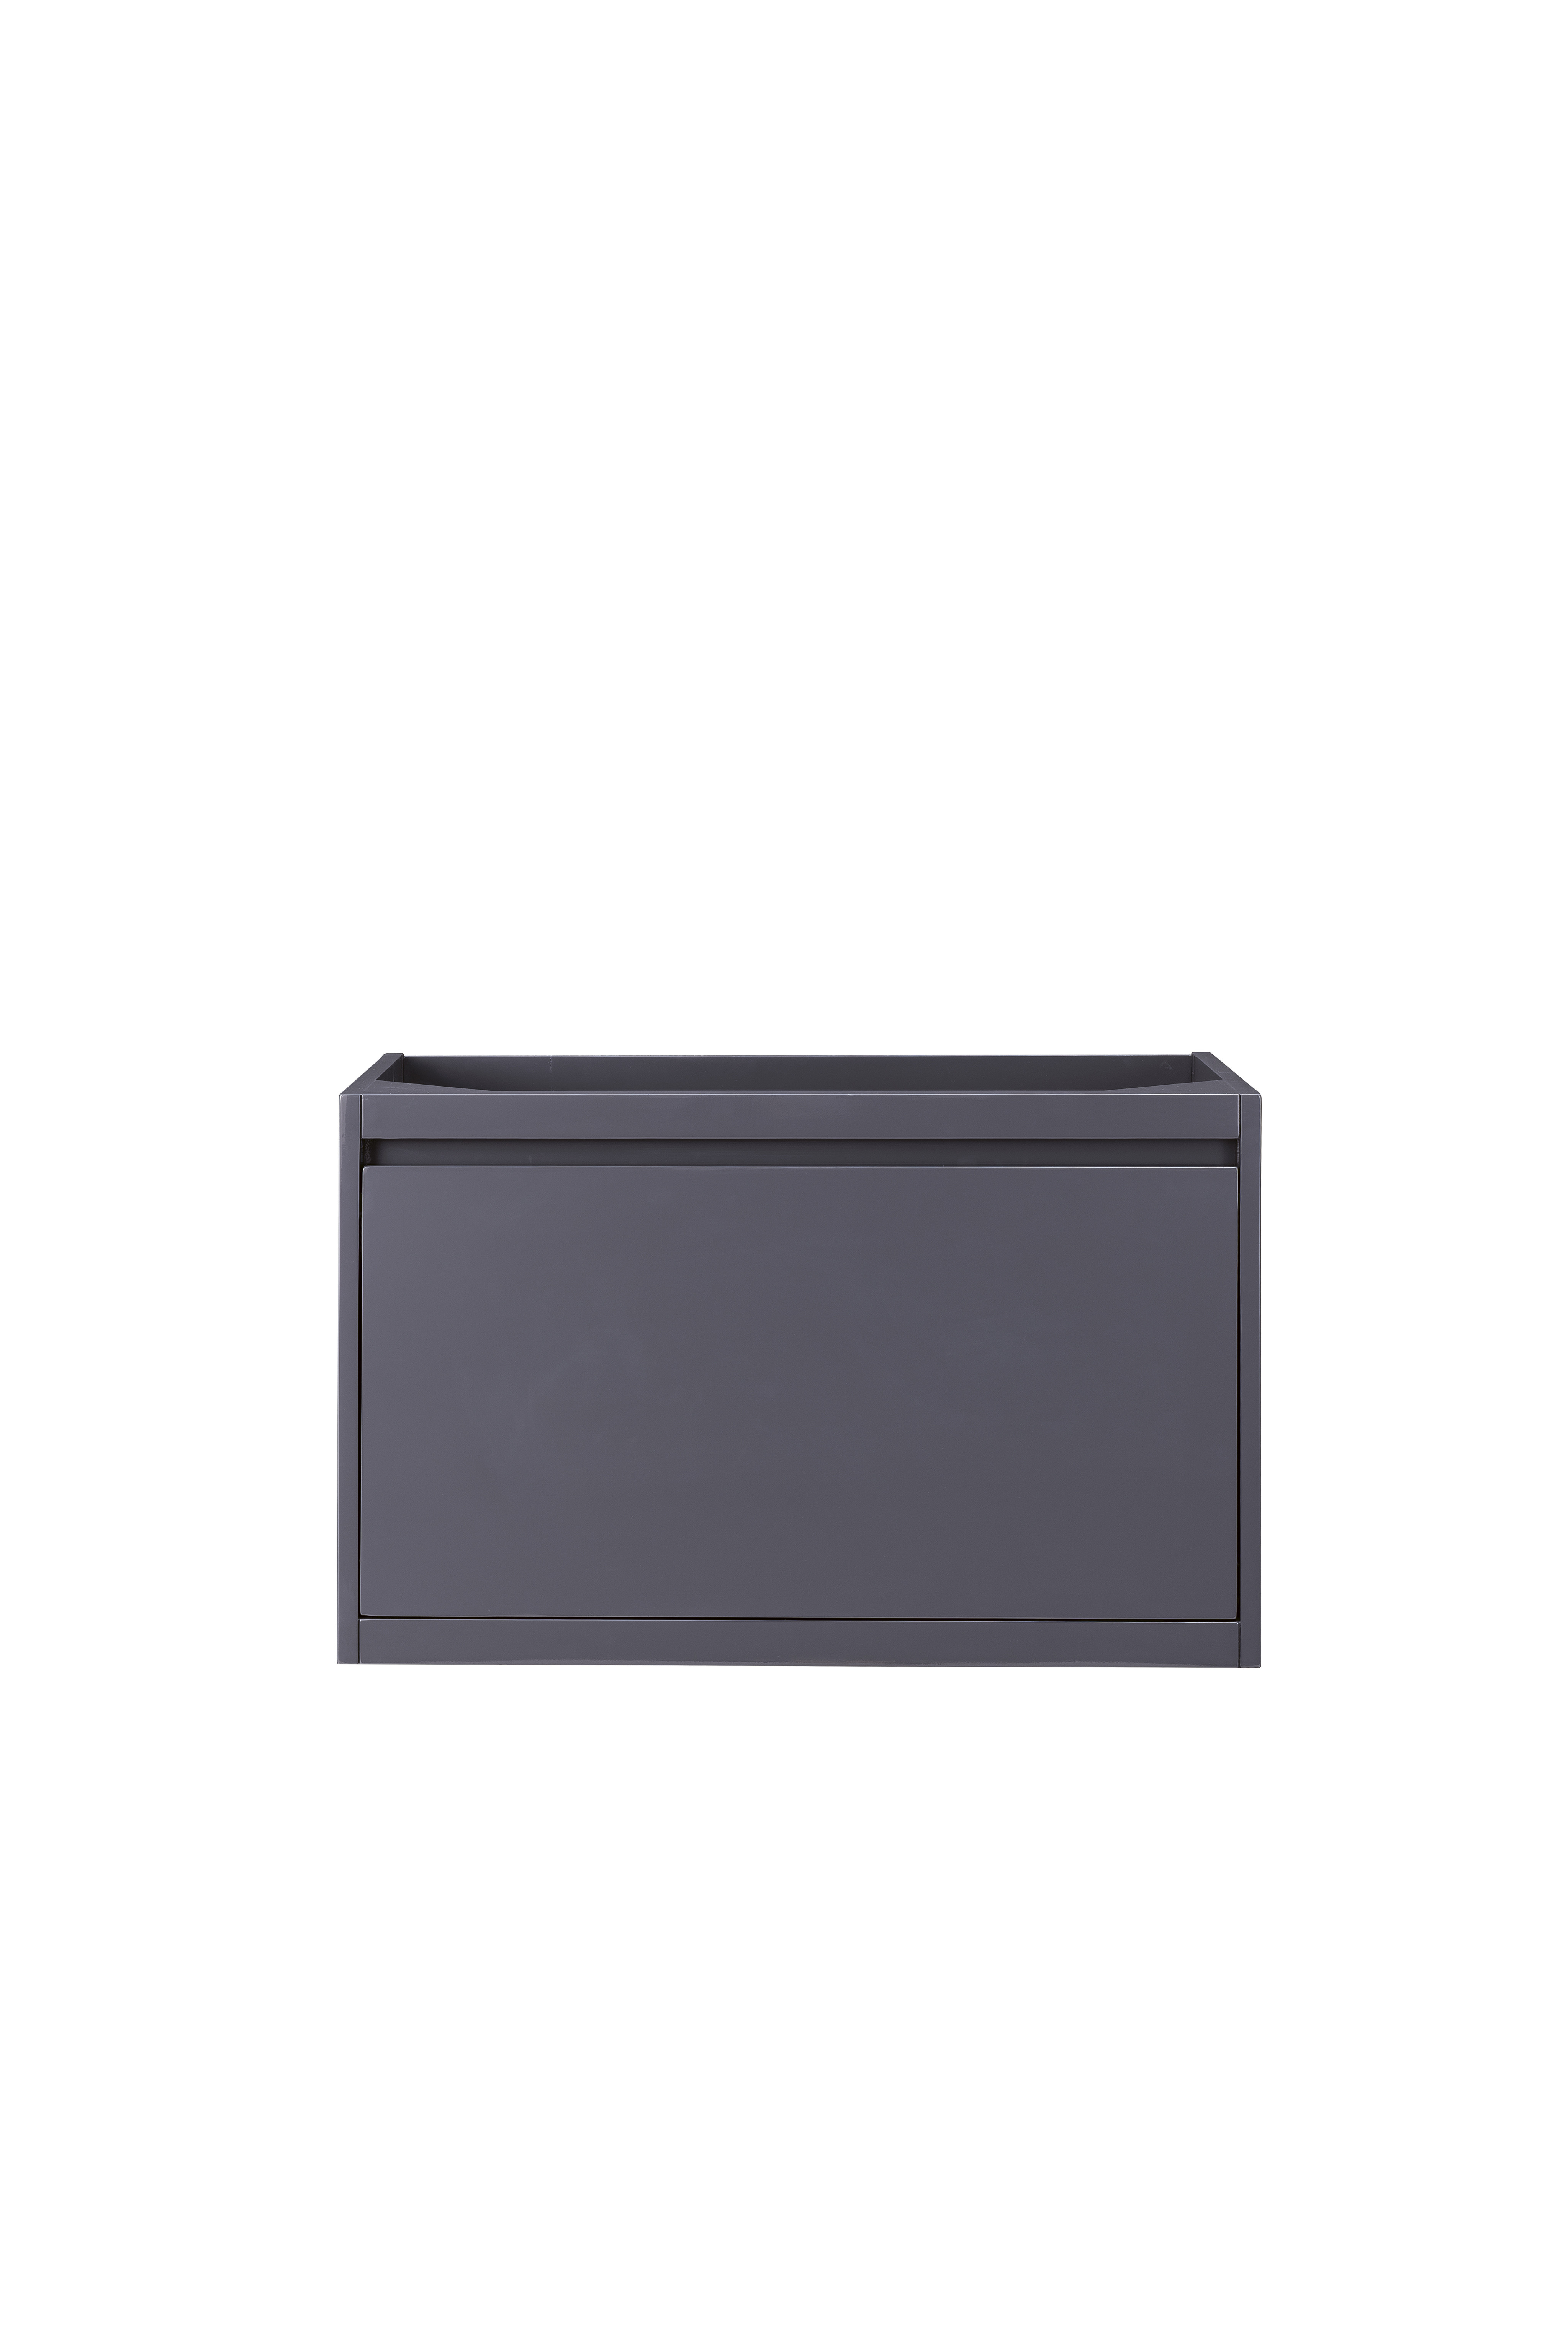 James Martin 801-V31.5-MGG Milan 31.5" Single Vanity Cabinet, Modern Grey Glossy - Click Image to Close